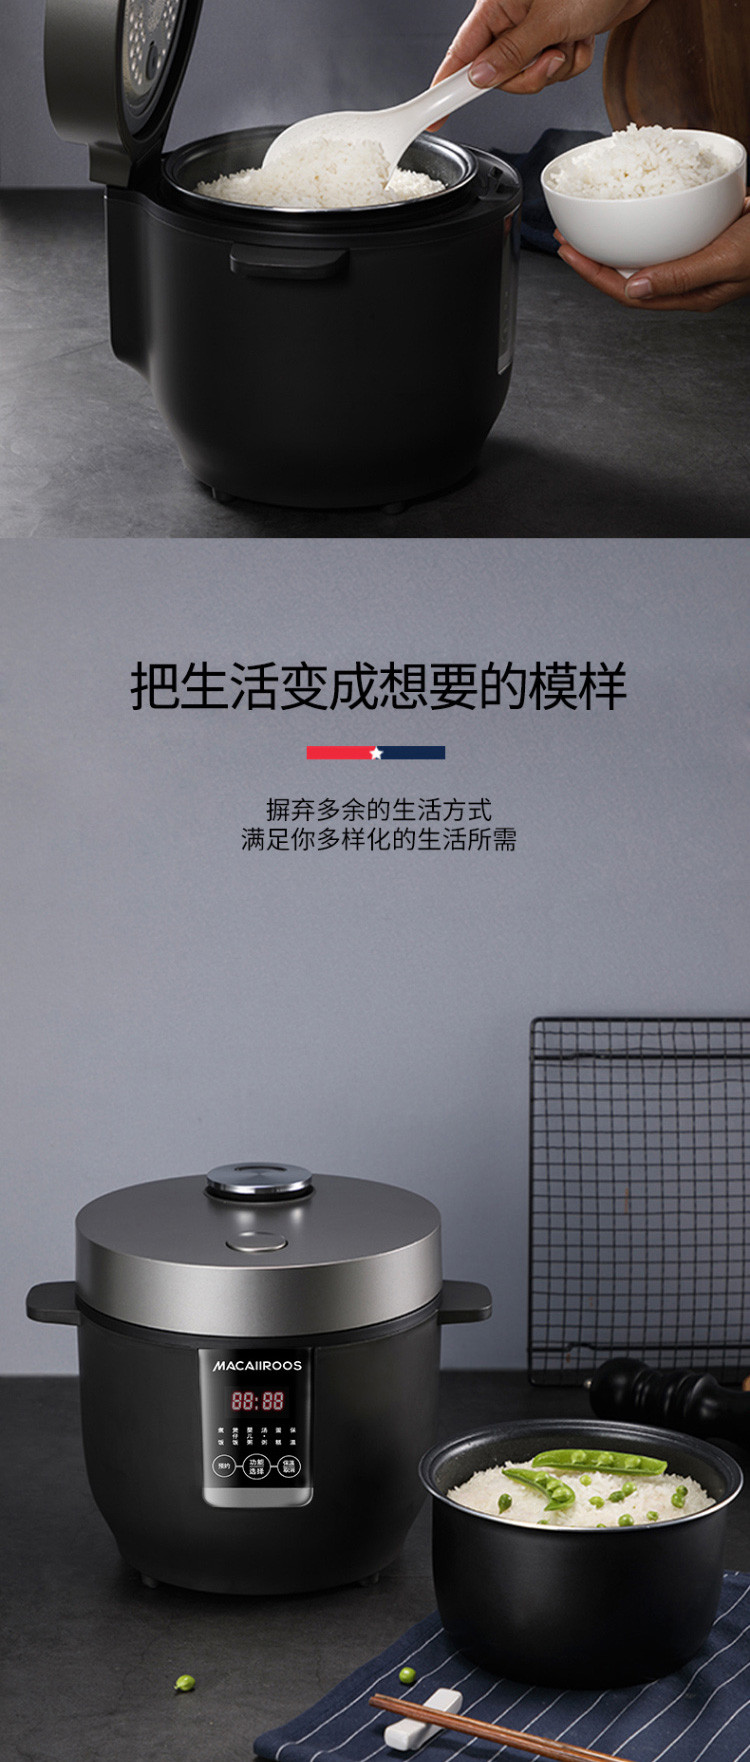 迈卡罗 2L迷你电饭煲 家用多功能全自动1-2人宿舍寝室小型电饭锅 电脑版-白色MC-5059